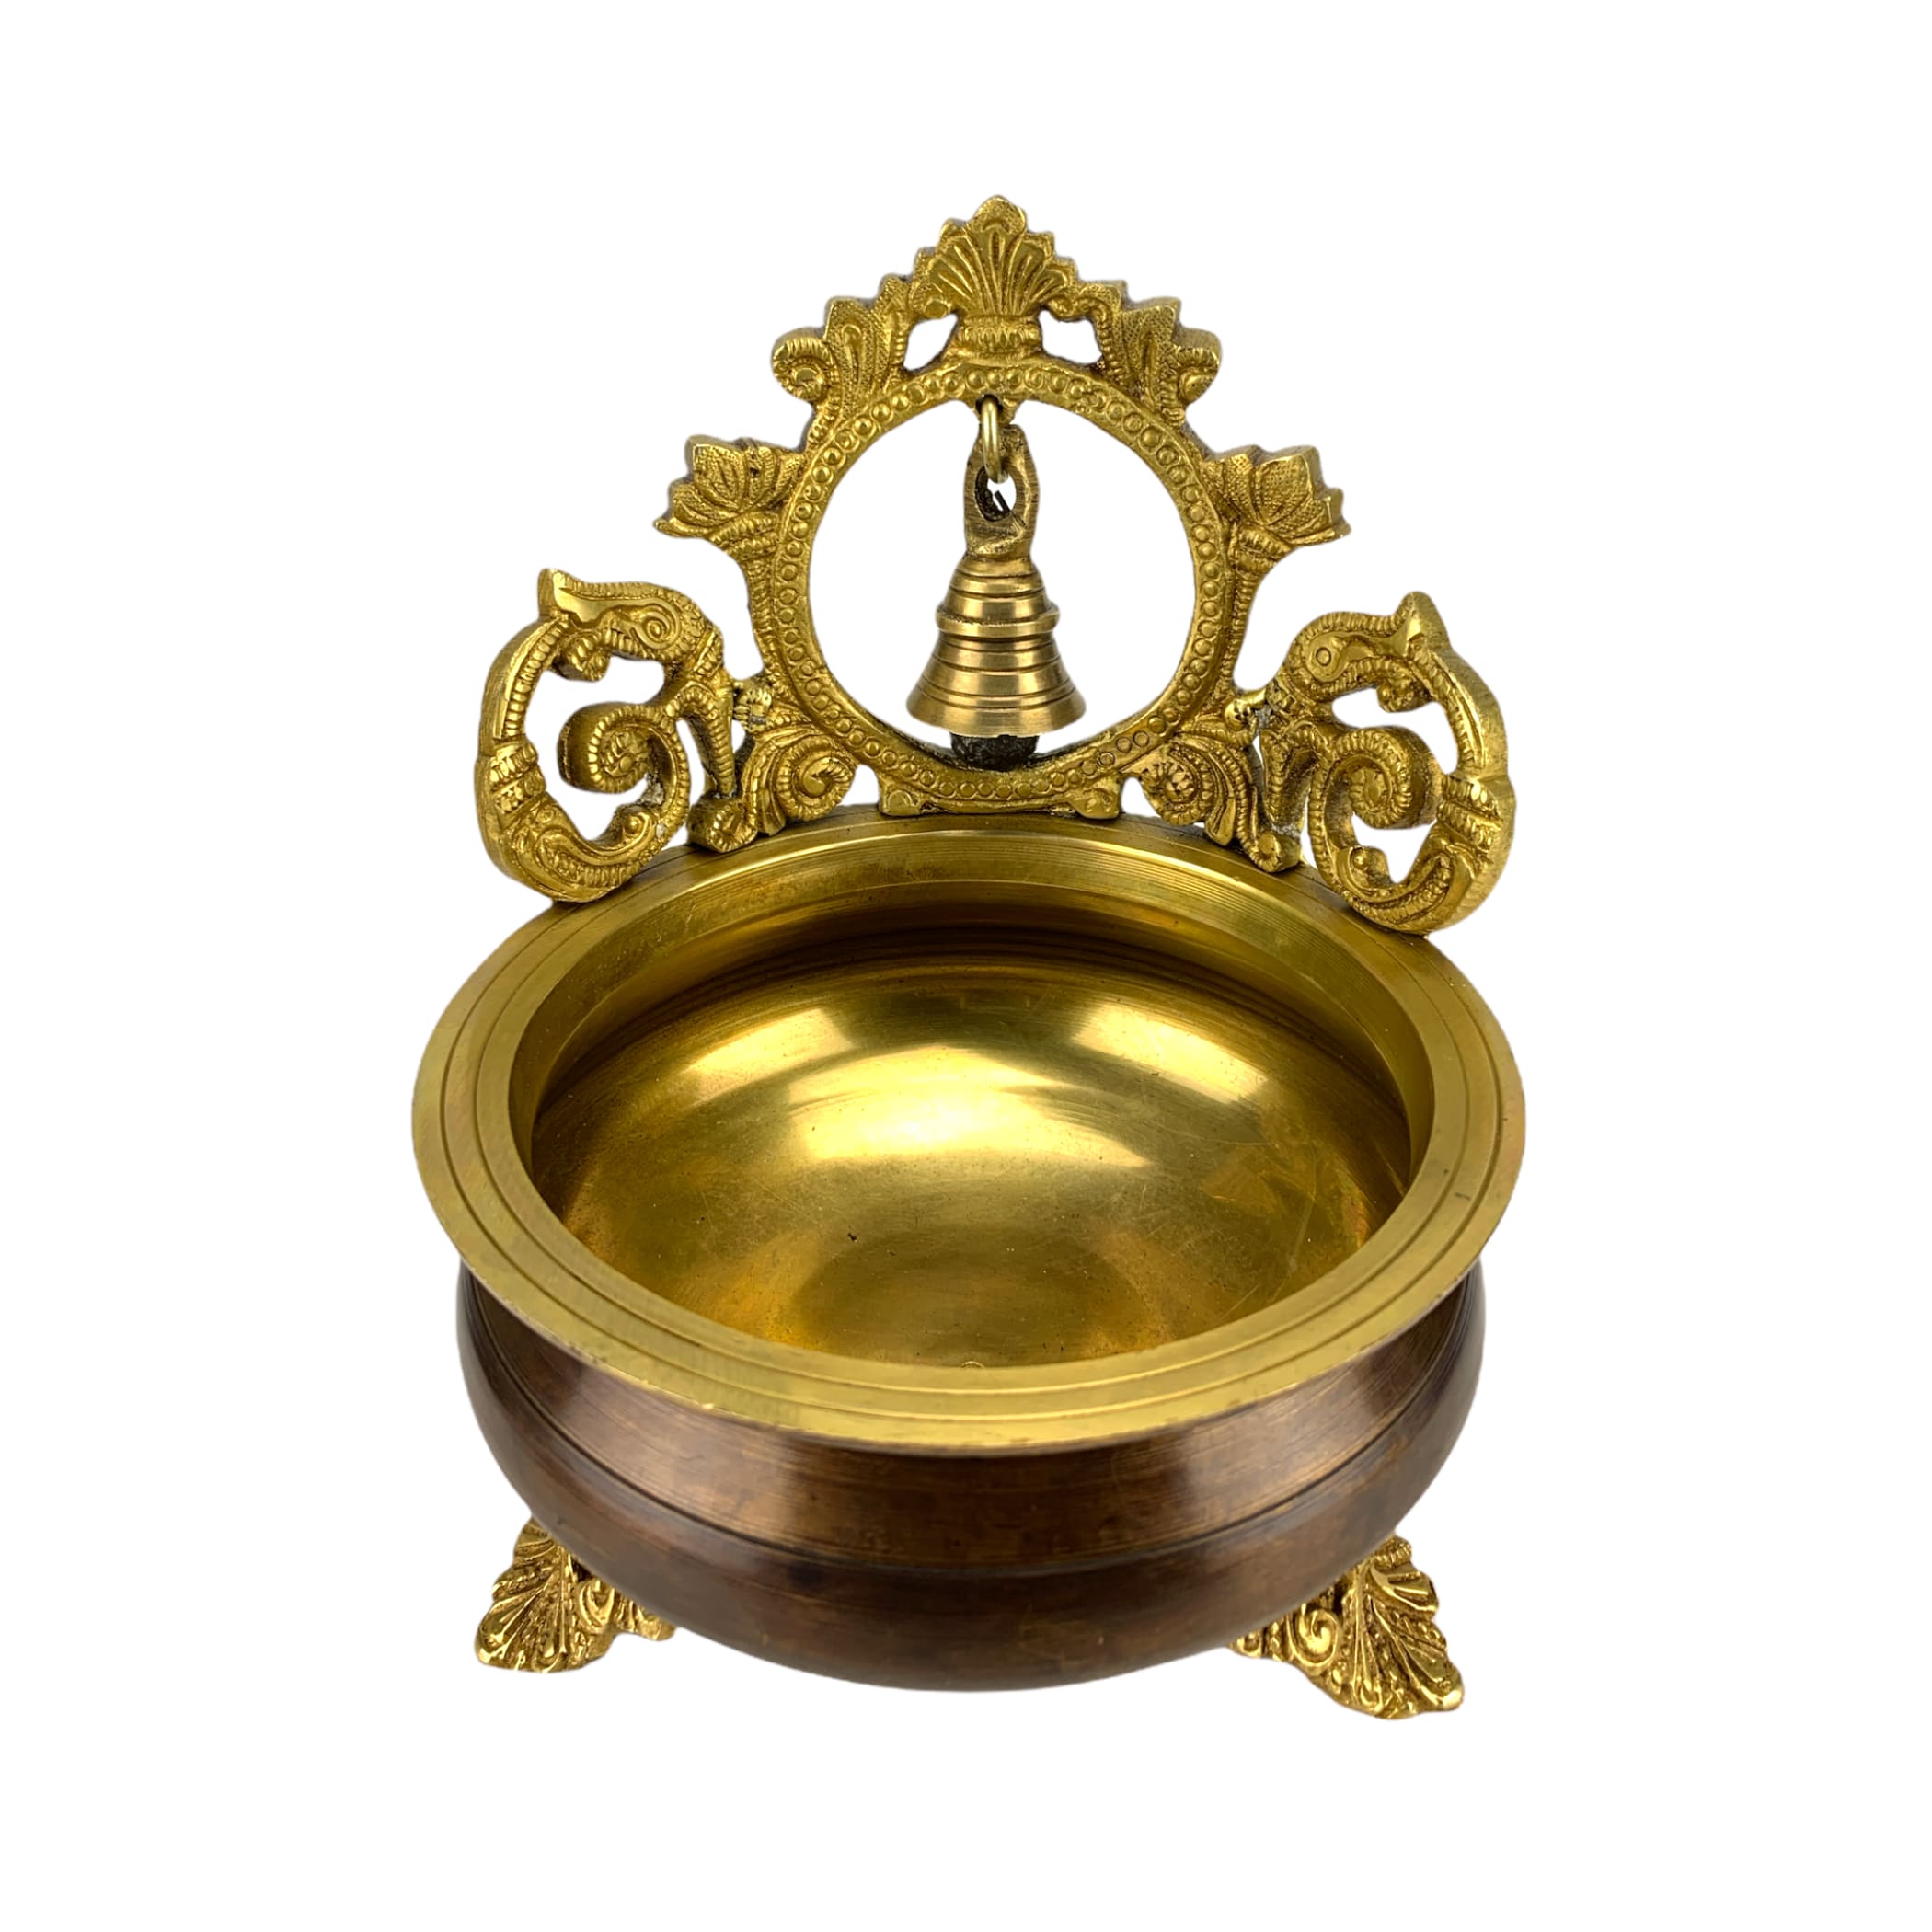 Bell brass urli bowl center table decor showpiece for indian